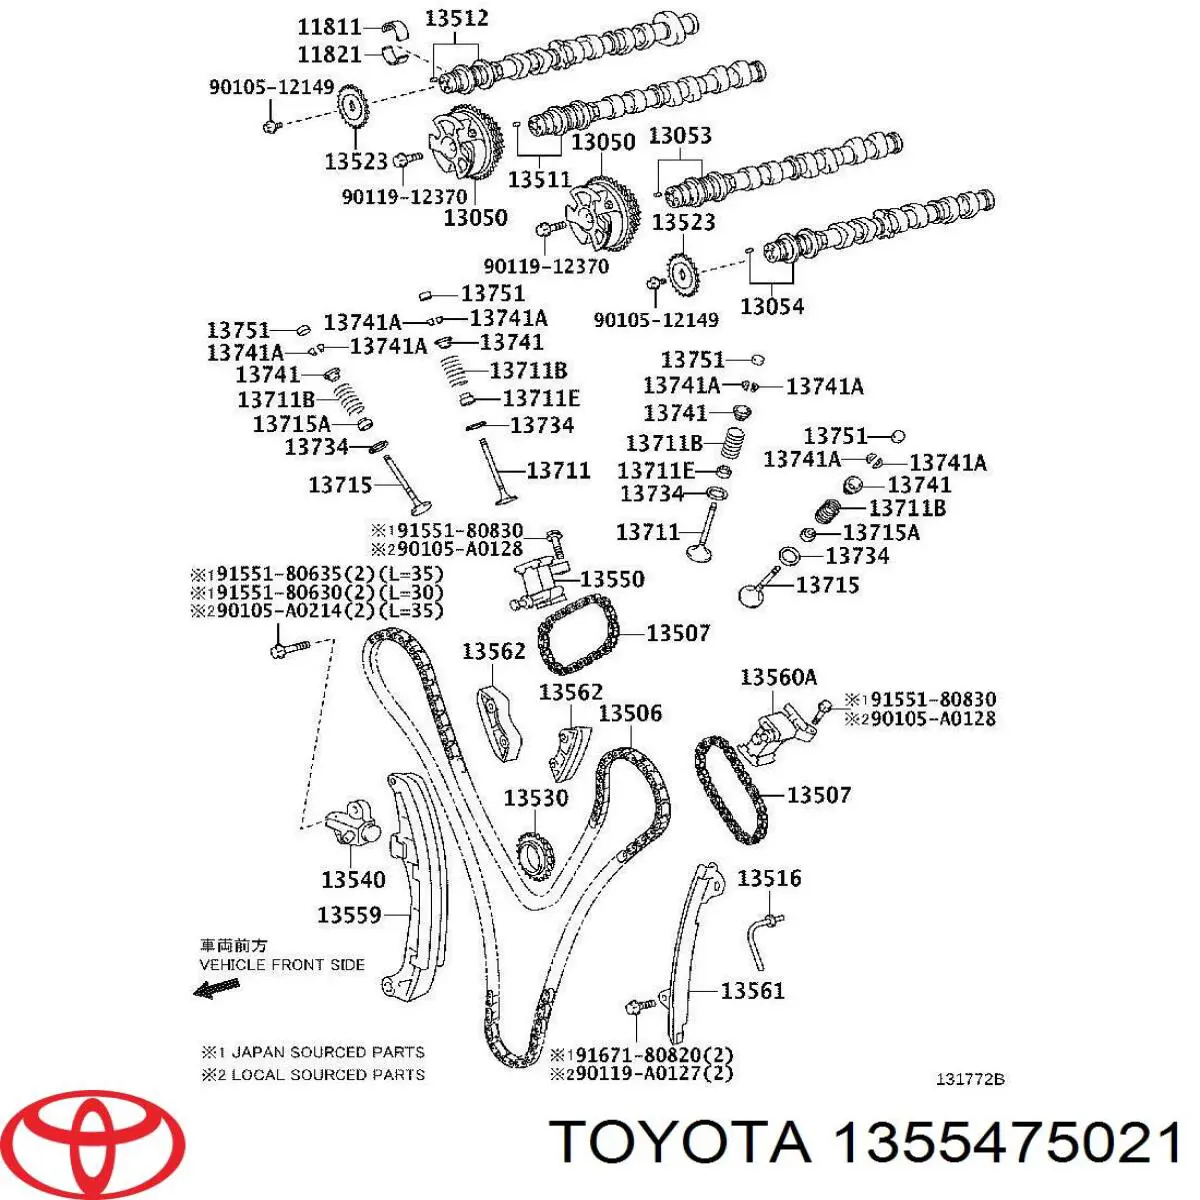 1355475021 Toyota carril de deslizamiento, cadena de distribución